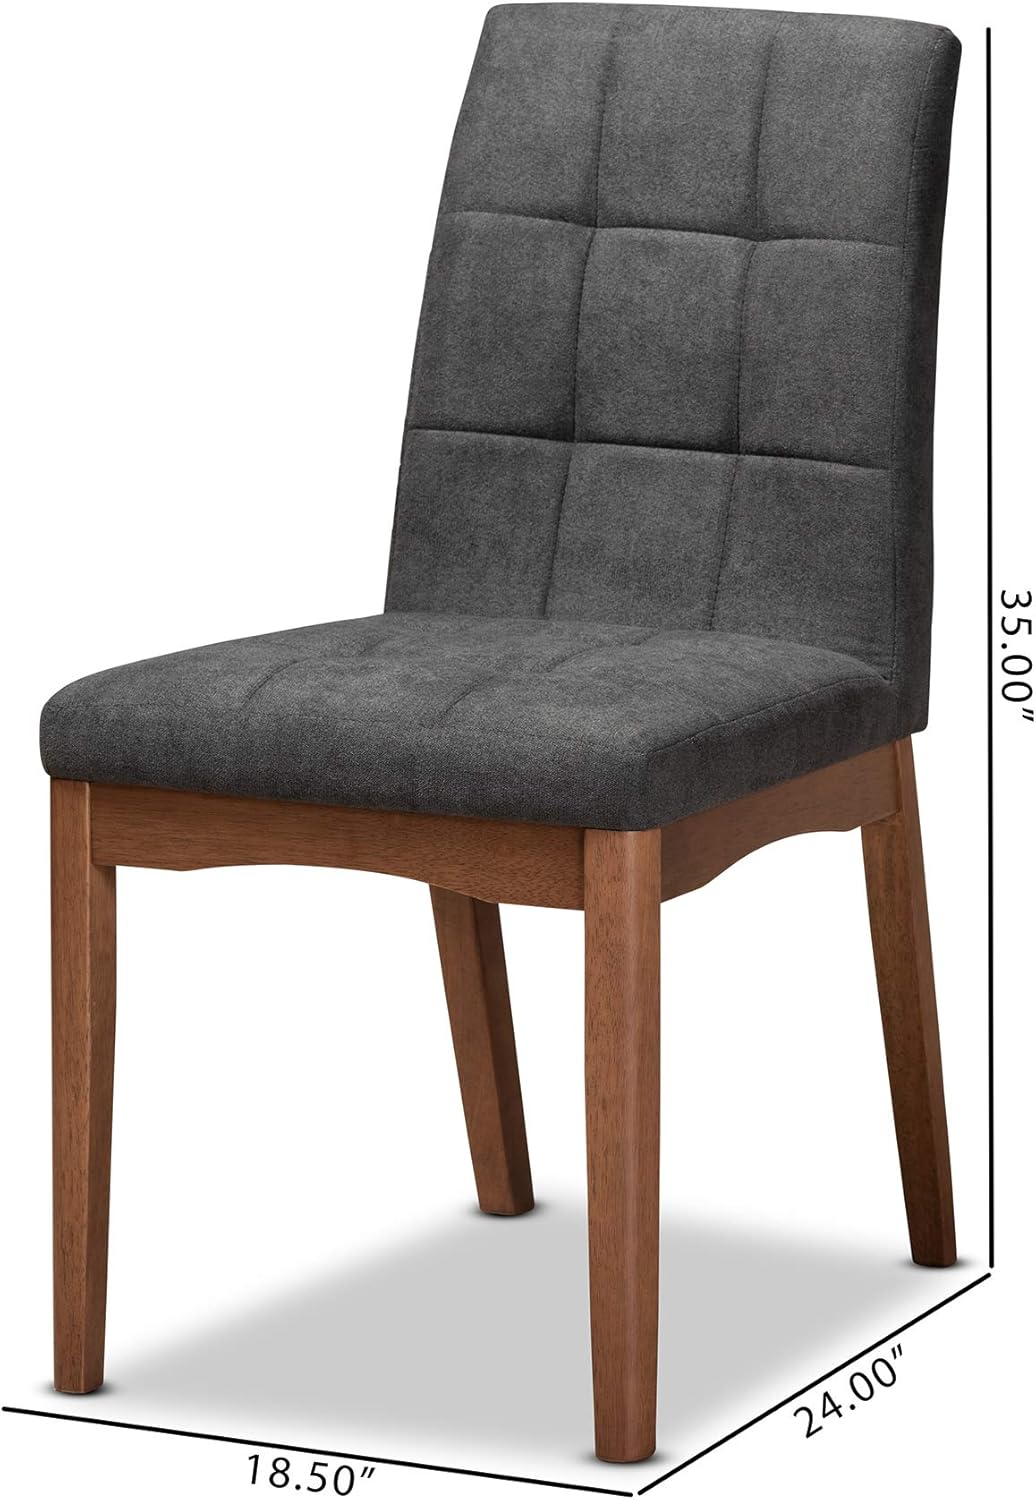 Baxton Studio Tara Juego de sillas de comedor de 2 piezas con acabado de madera